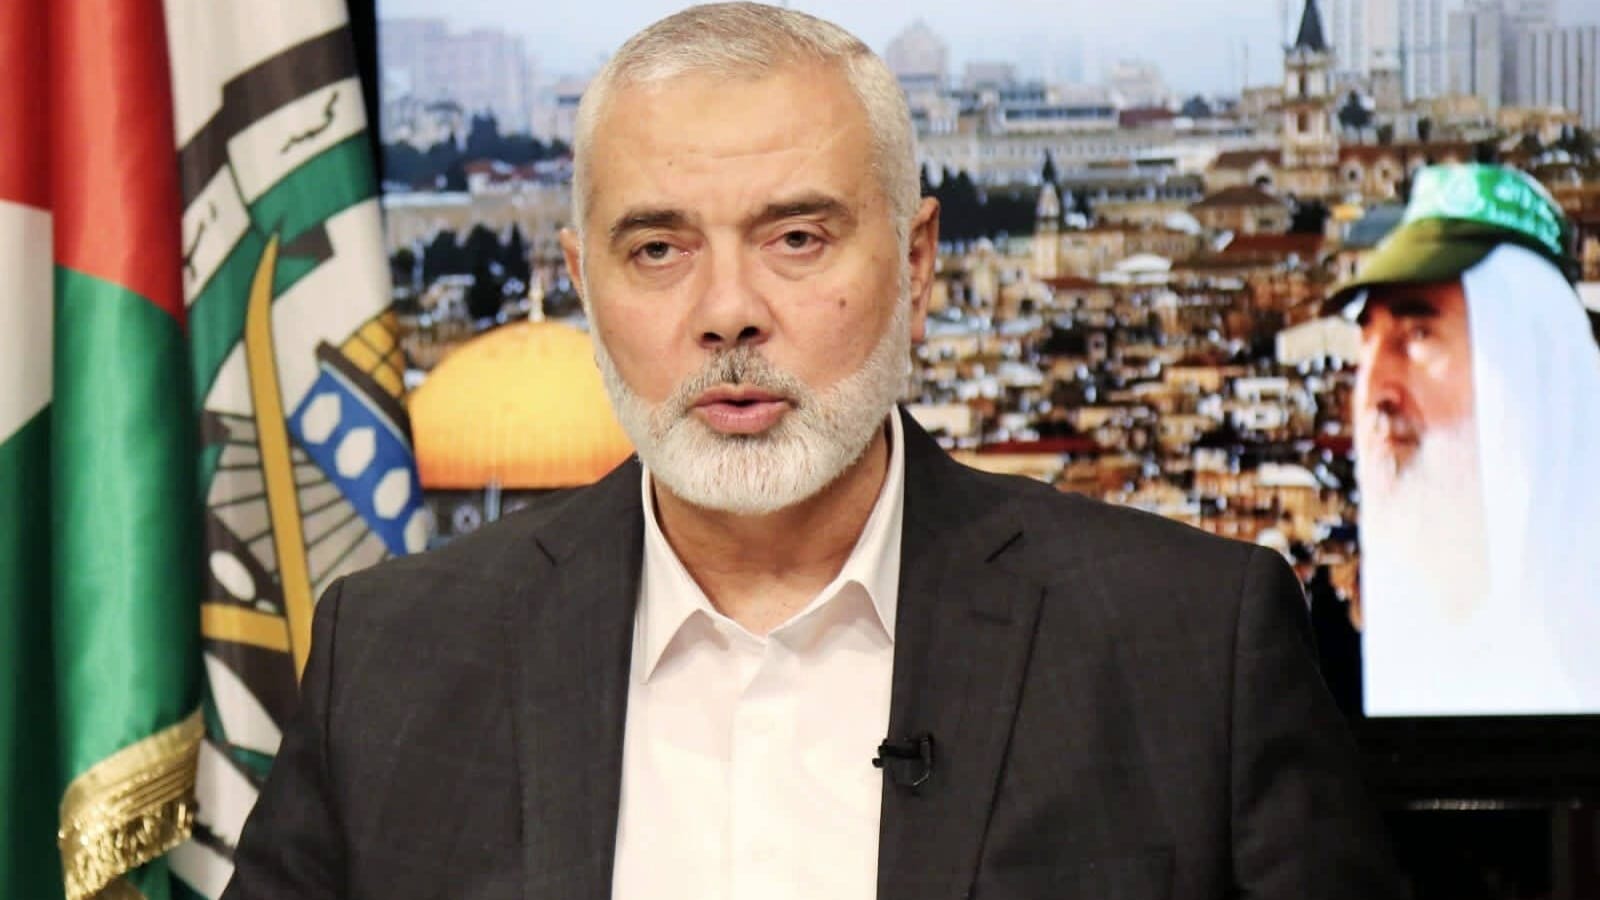 Nahost-Krieg: Söhne und Enkel von Hamas-Chef durch Israel getötet